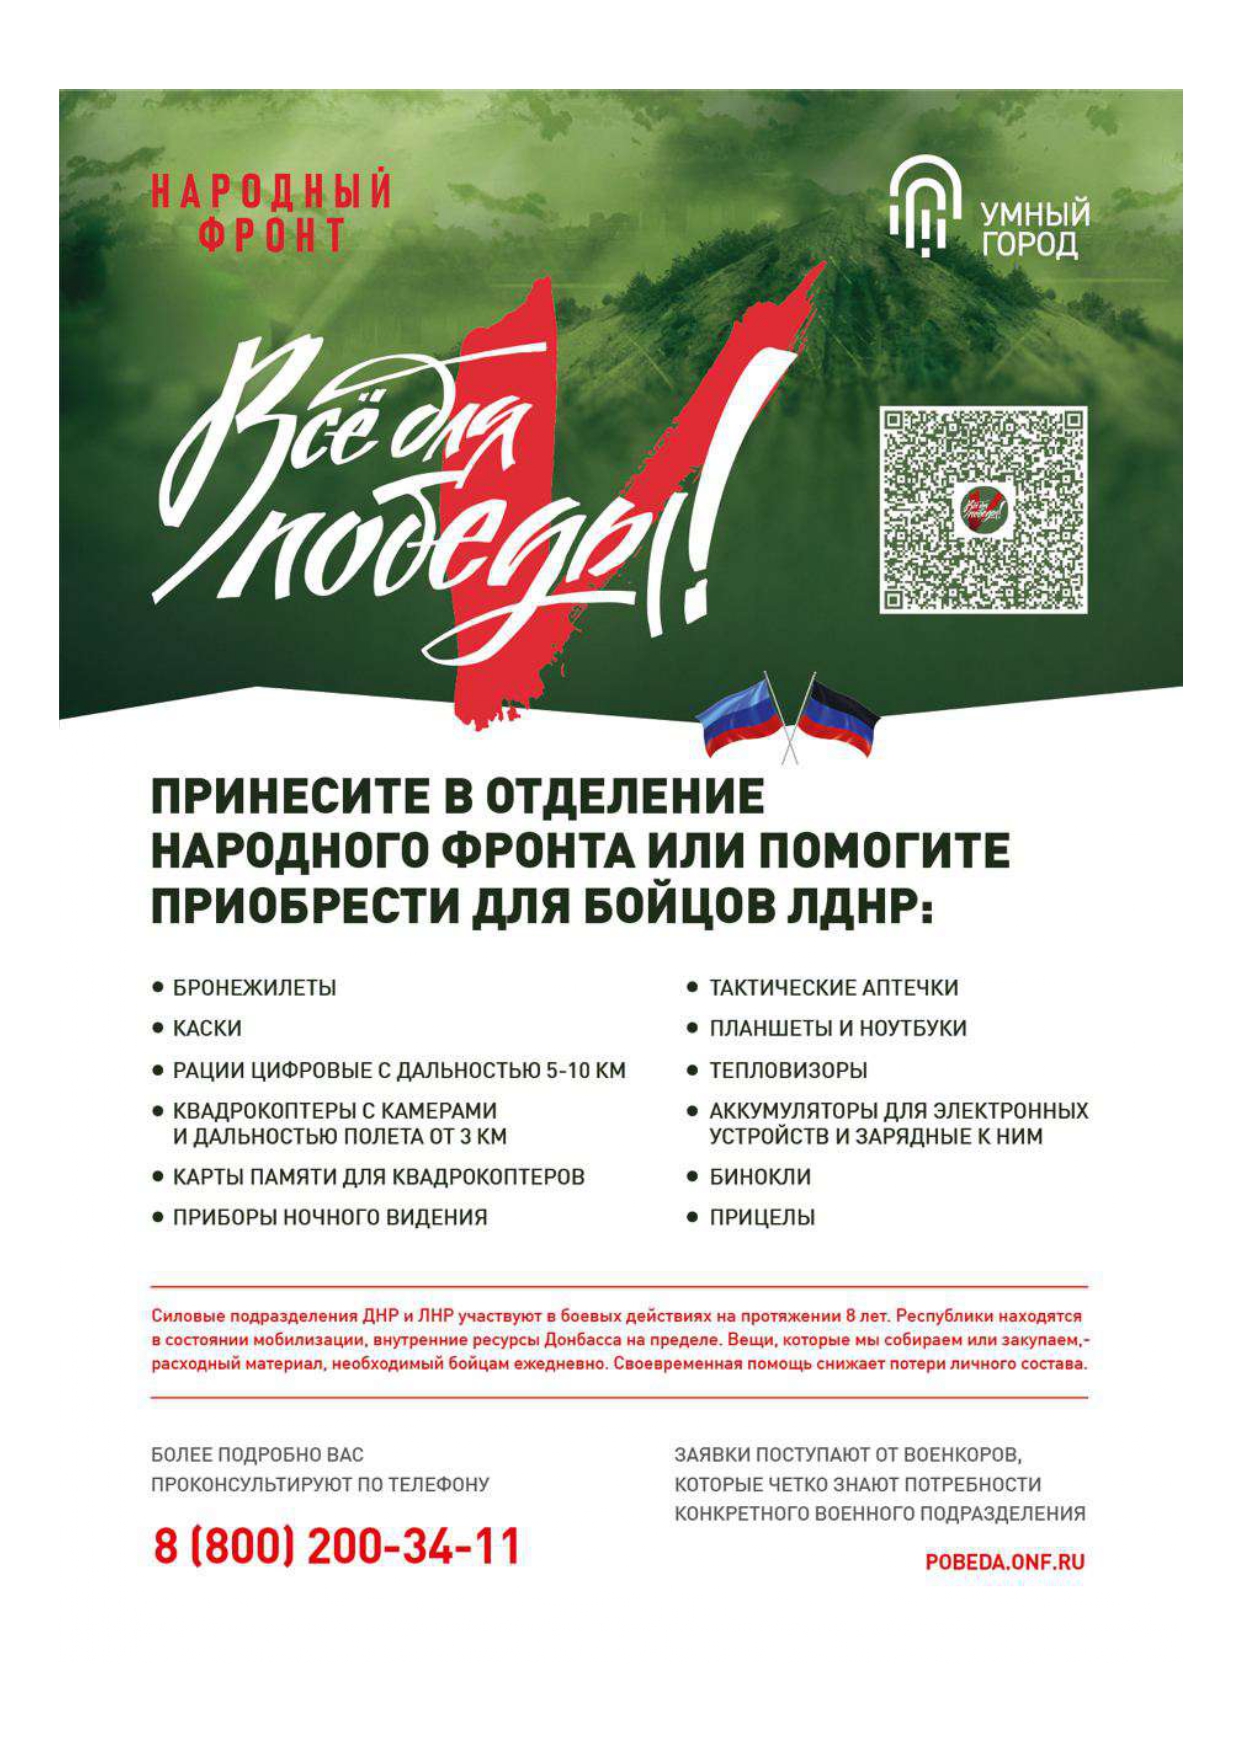 Минстрой РФ совместно с «Народным фронтом» объявили сбор средств для бойцов ЛДНР